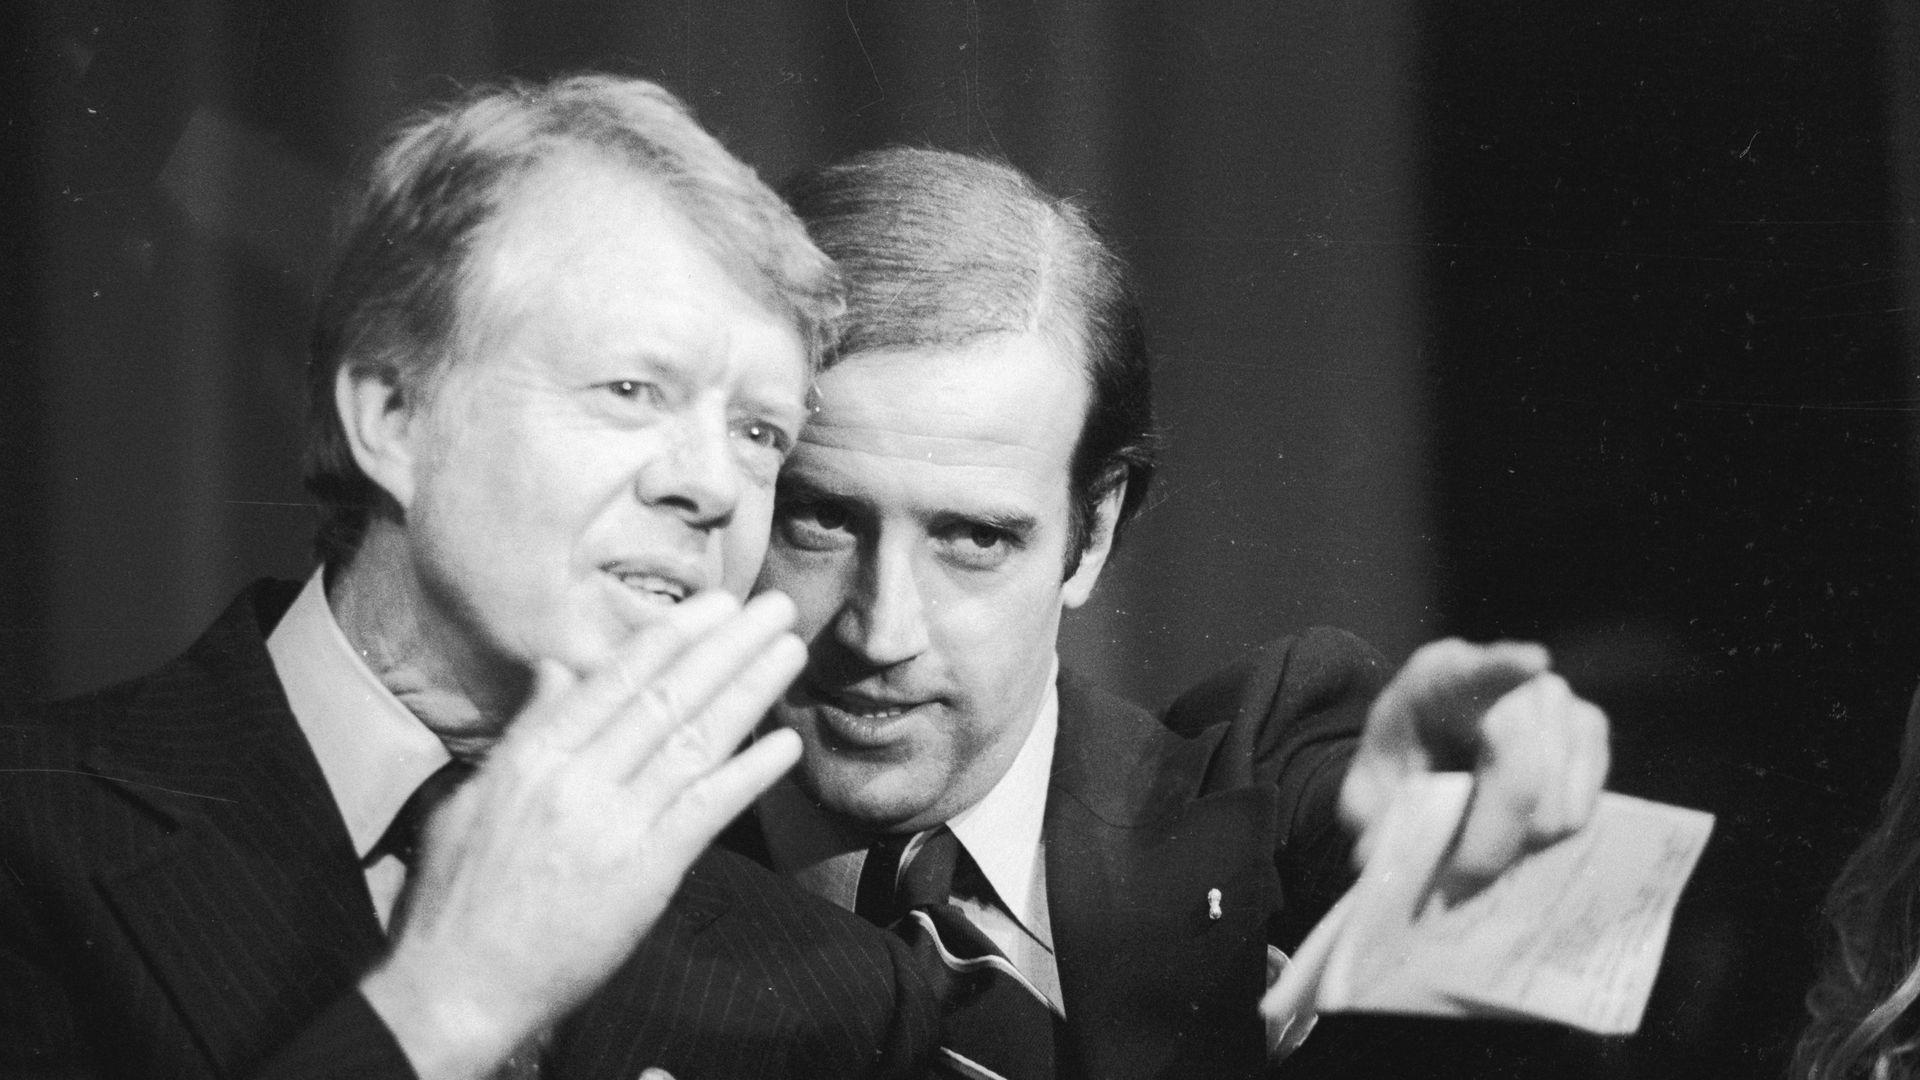 Jimmy Carter whispers to Joe Biden